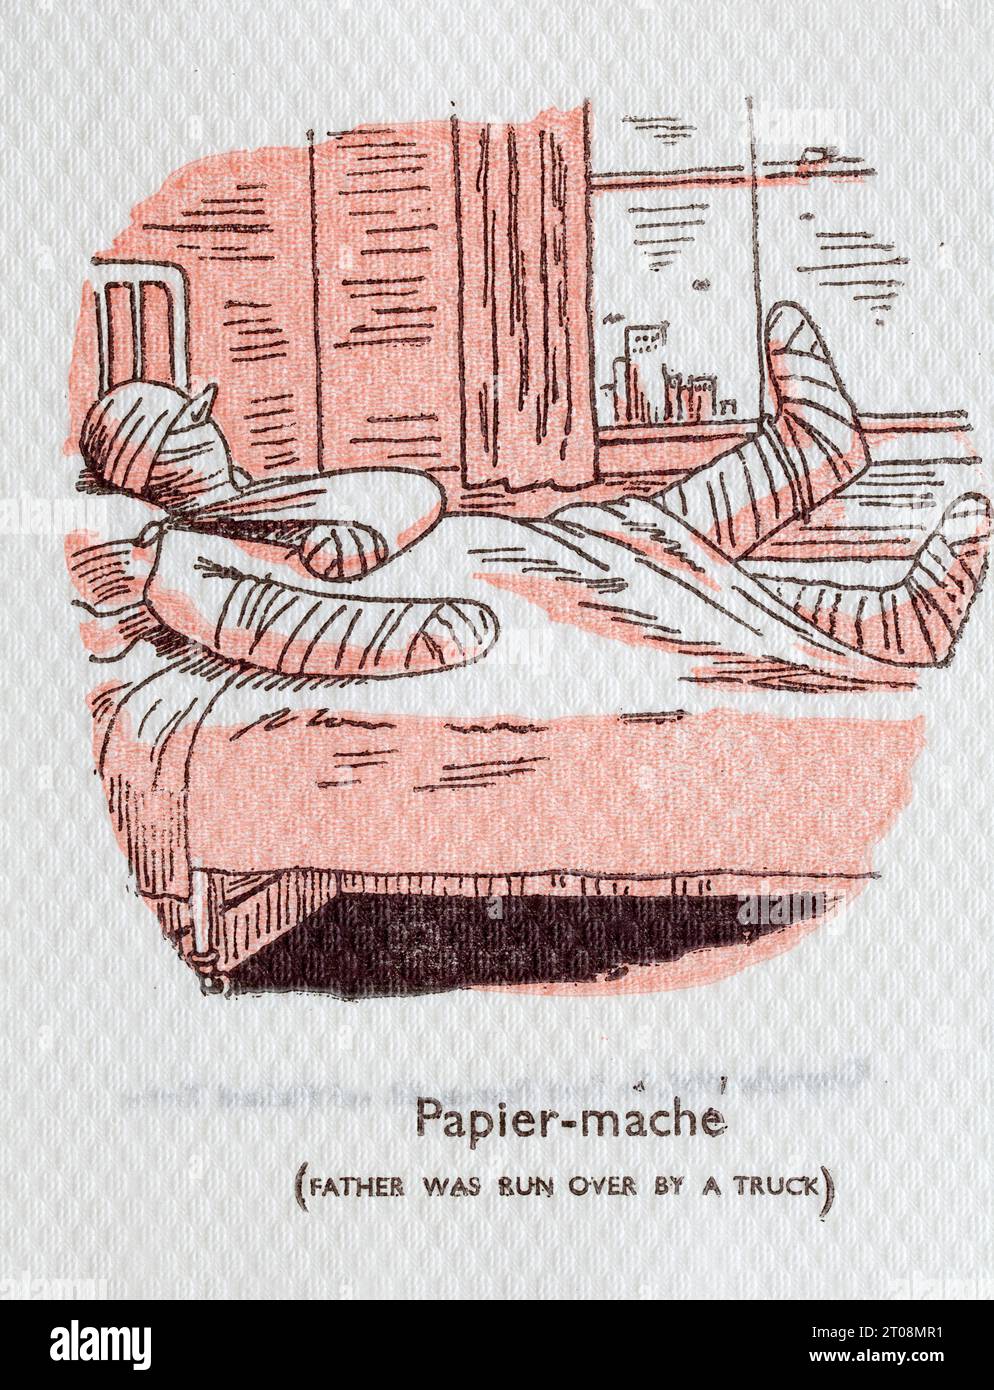 Années 1950 Cartoon Napkin - French Language Joke - papier mâche - Père a été écrasé par Un camion Banque D'Images